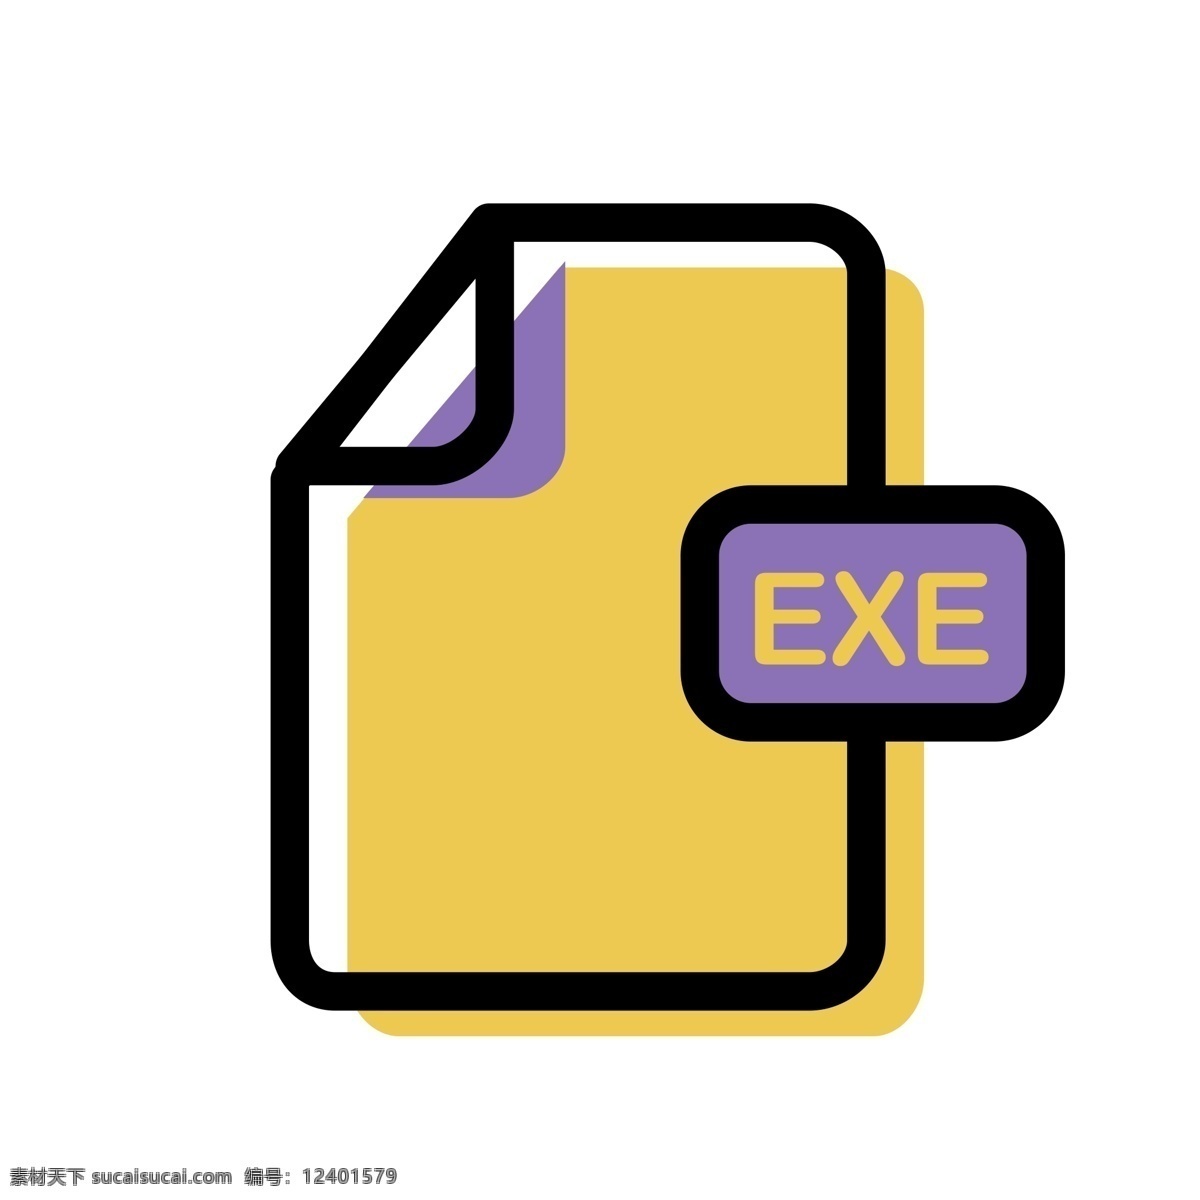 exe 文件 格式 图标 免 抠 图 exe文件 电脑文件图标 ui应用图标 卡通图案 卡通插画 电脑图标 文件夹 免抠图